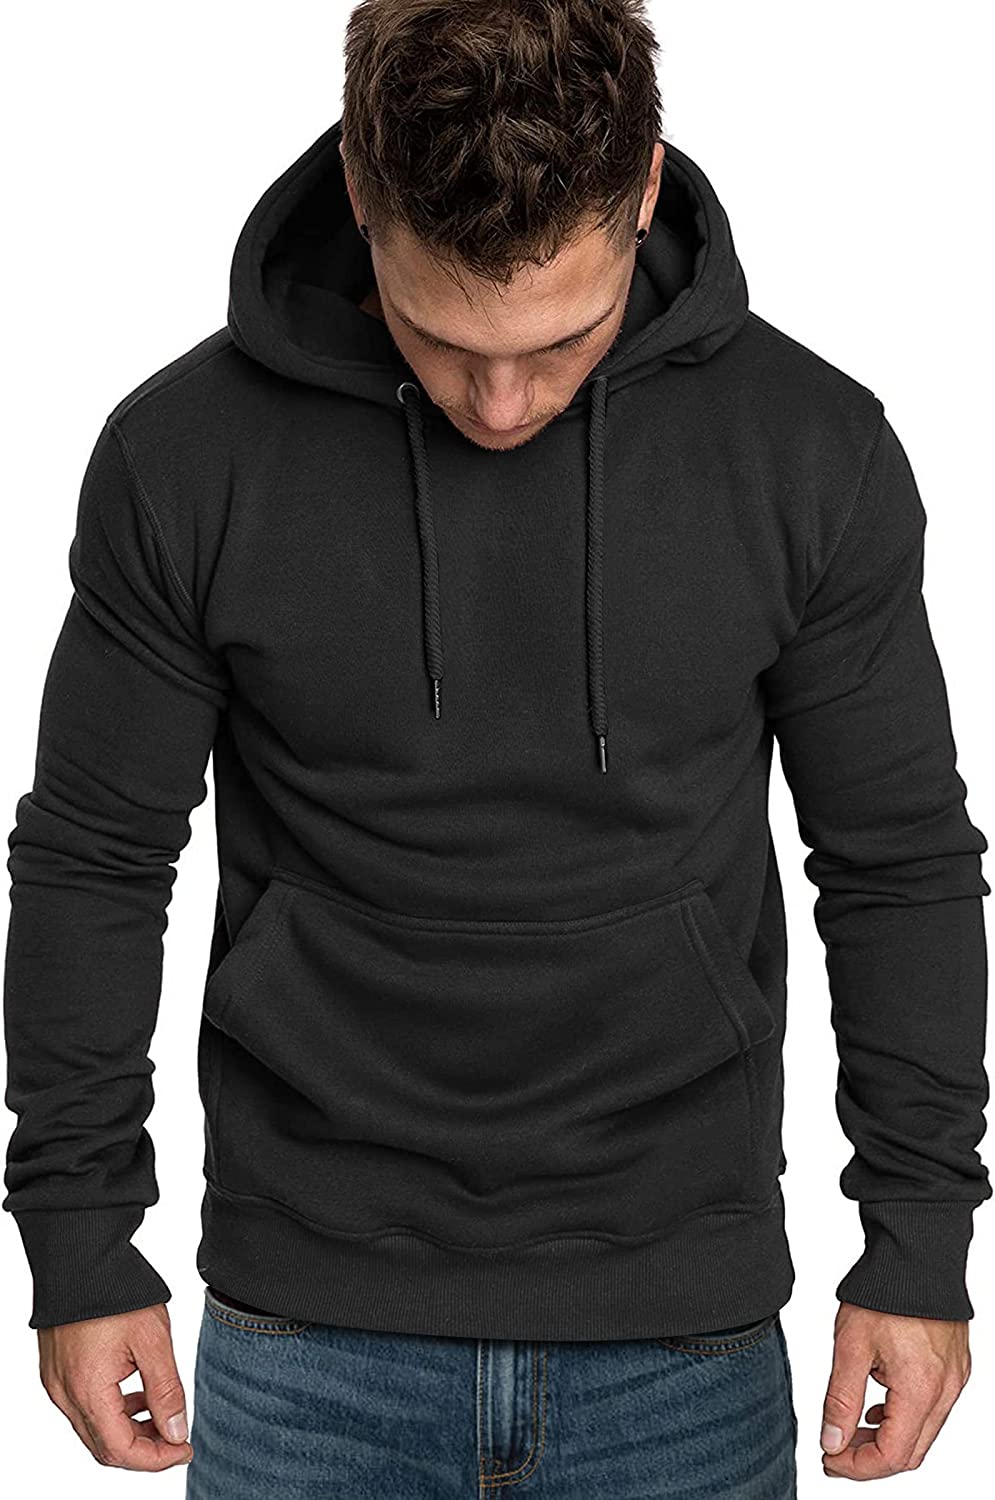 COOFANDY Men's Casual Hoodie Lightweight Long Sleeve Sports Hooded Sweatshirts Hoodies COOFANDY Store 